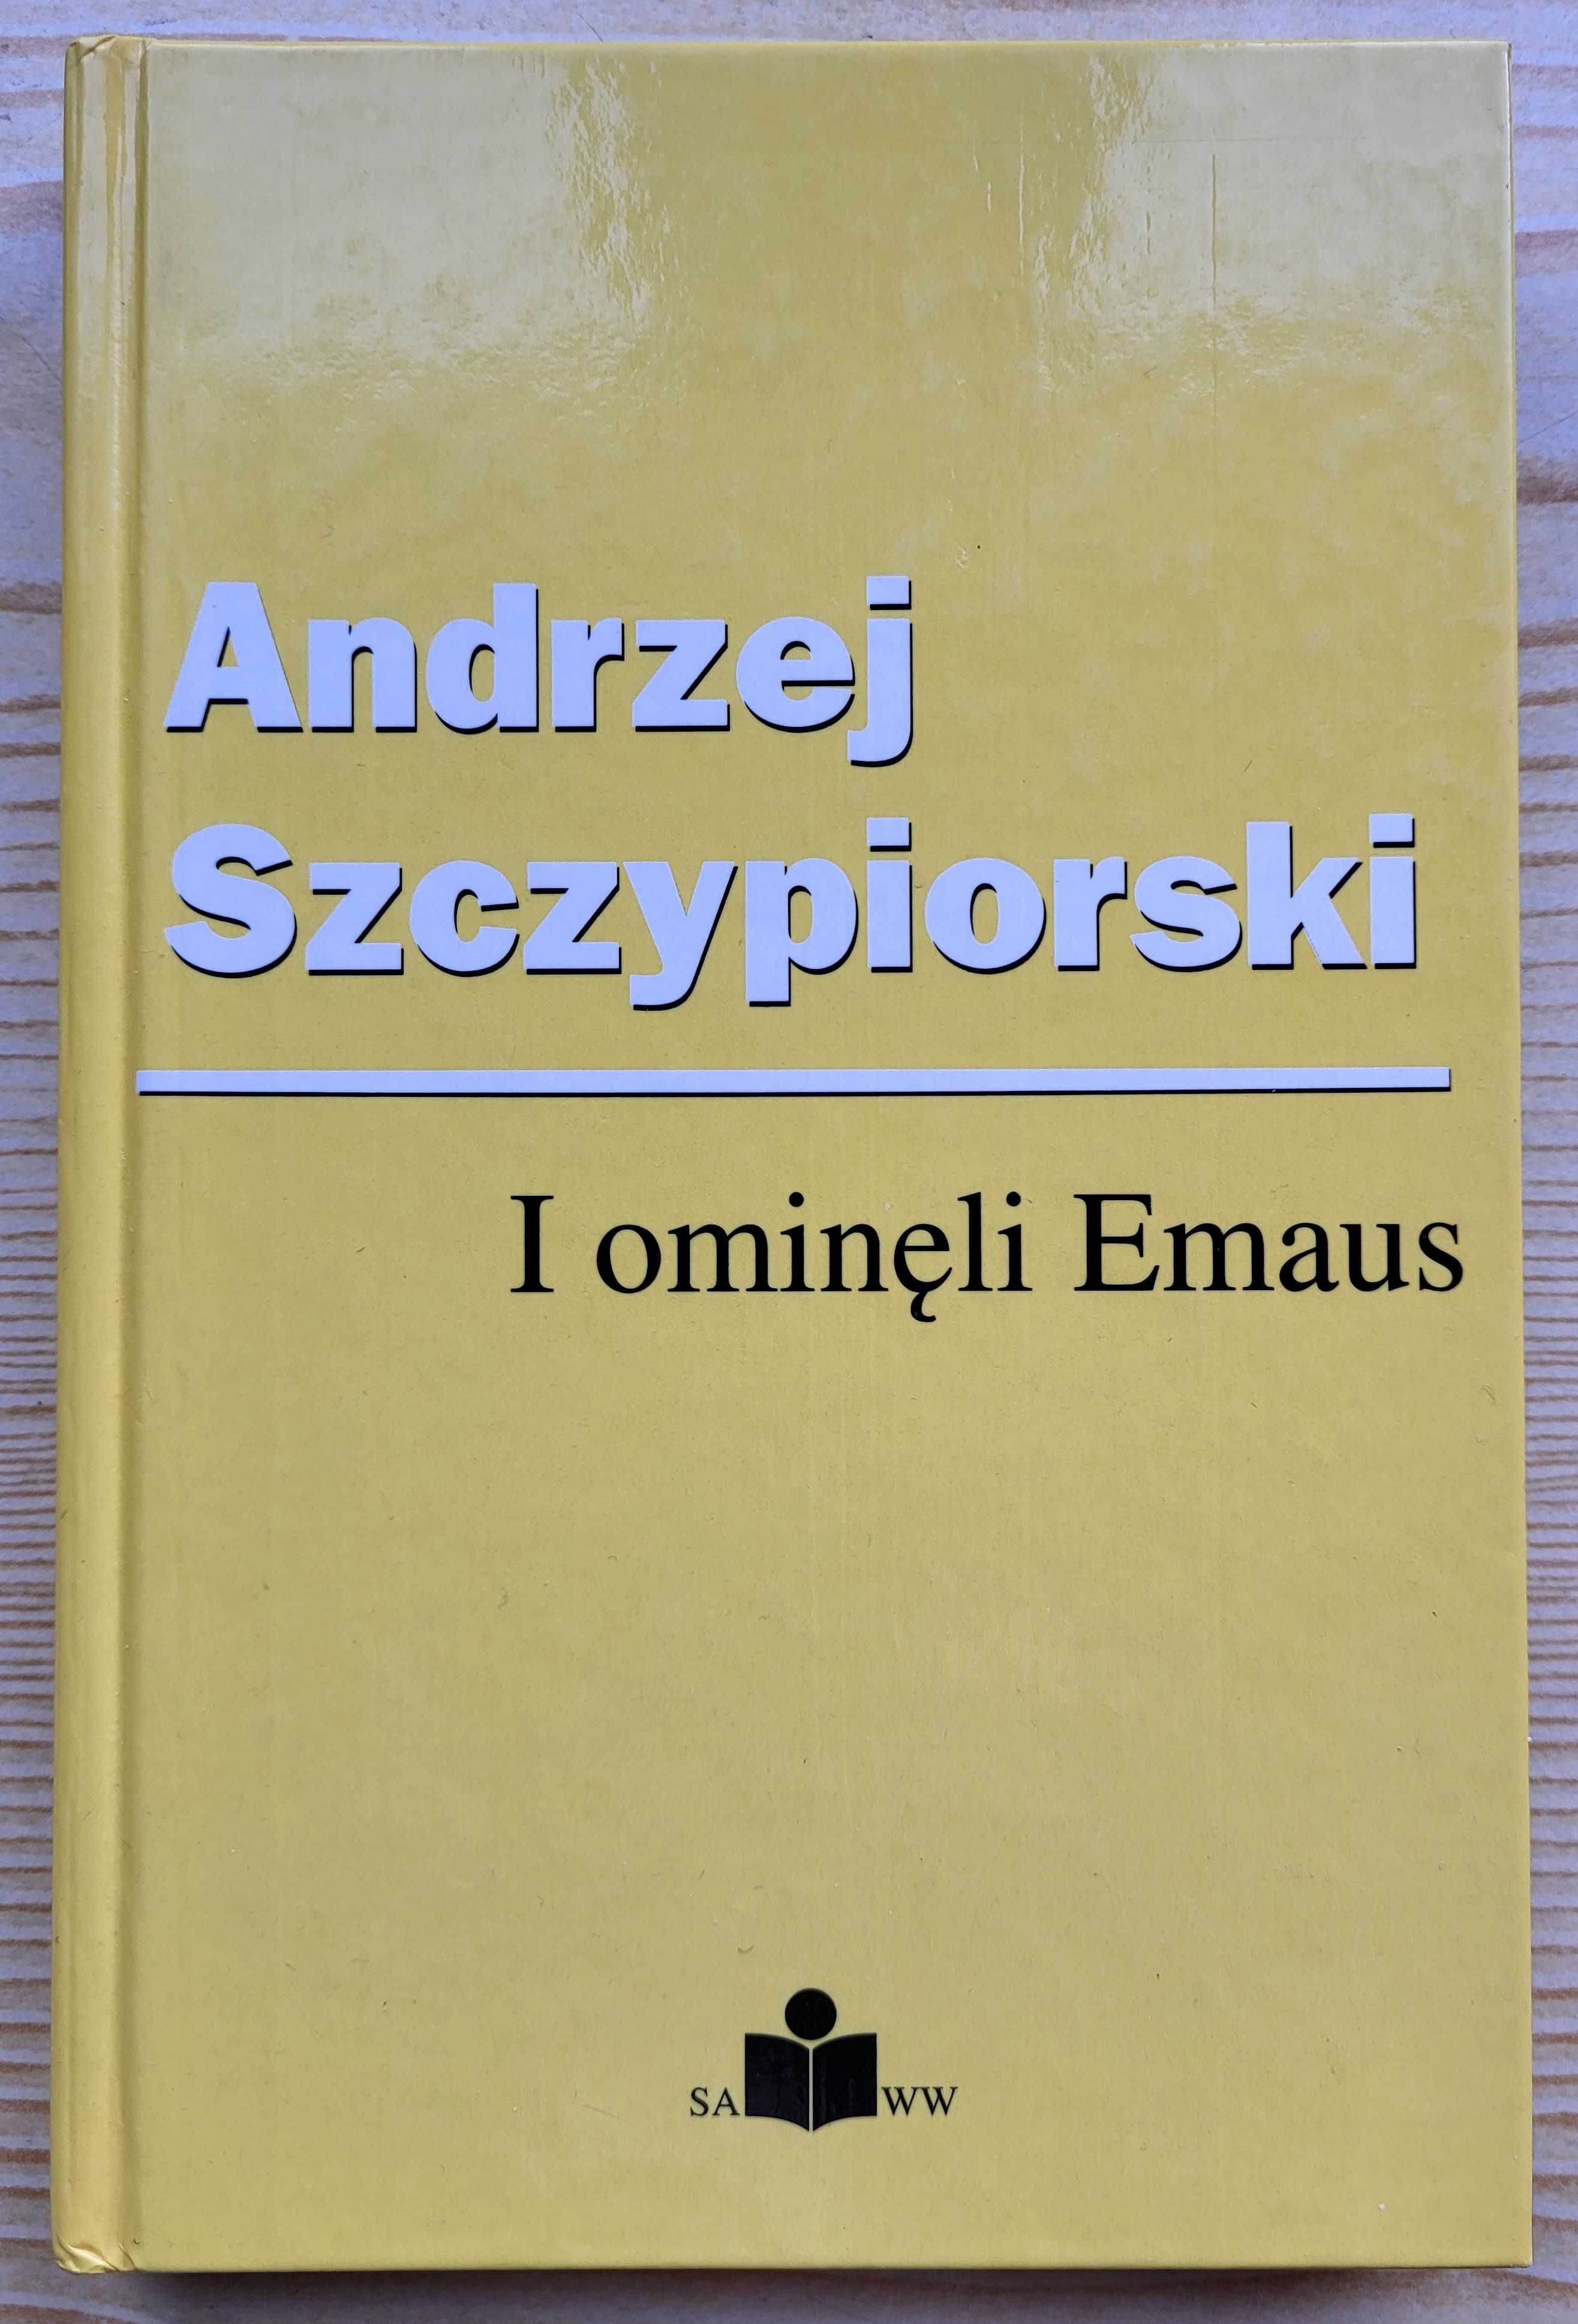 Andrzej Szczypiorski "I ominęli Emaus" TWARDA oprawa - NOWA - B. TANIO